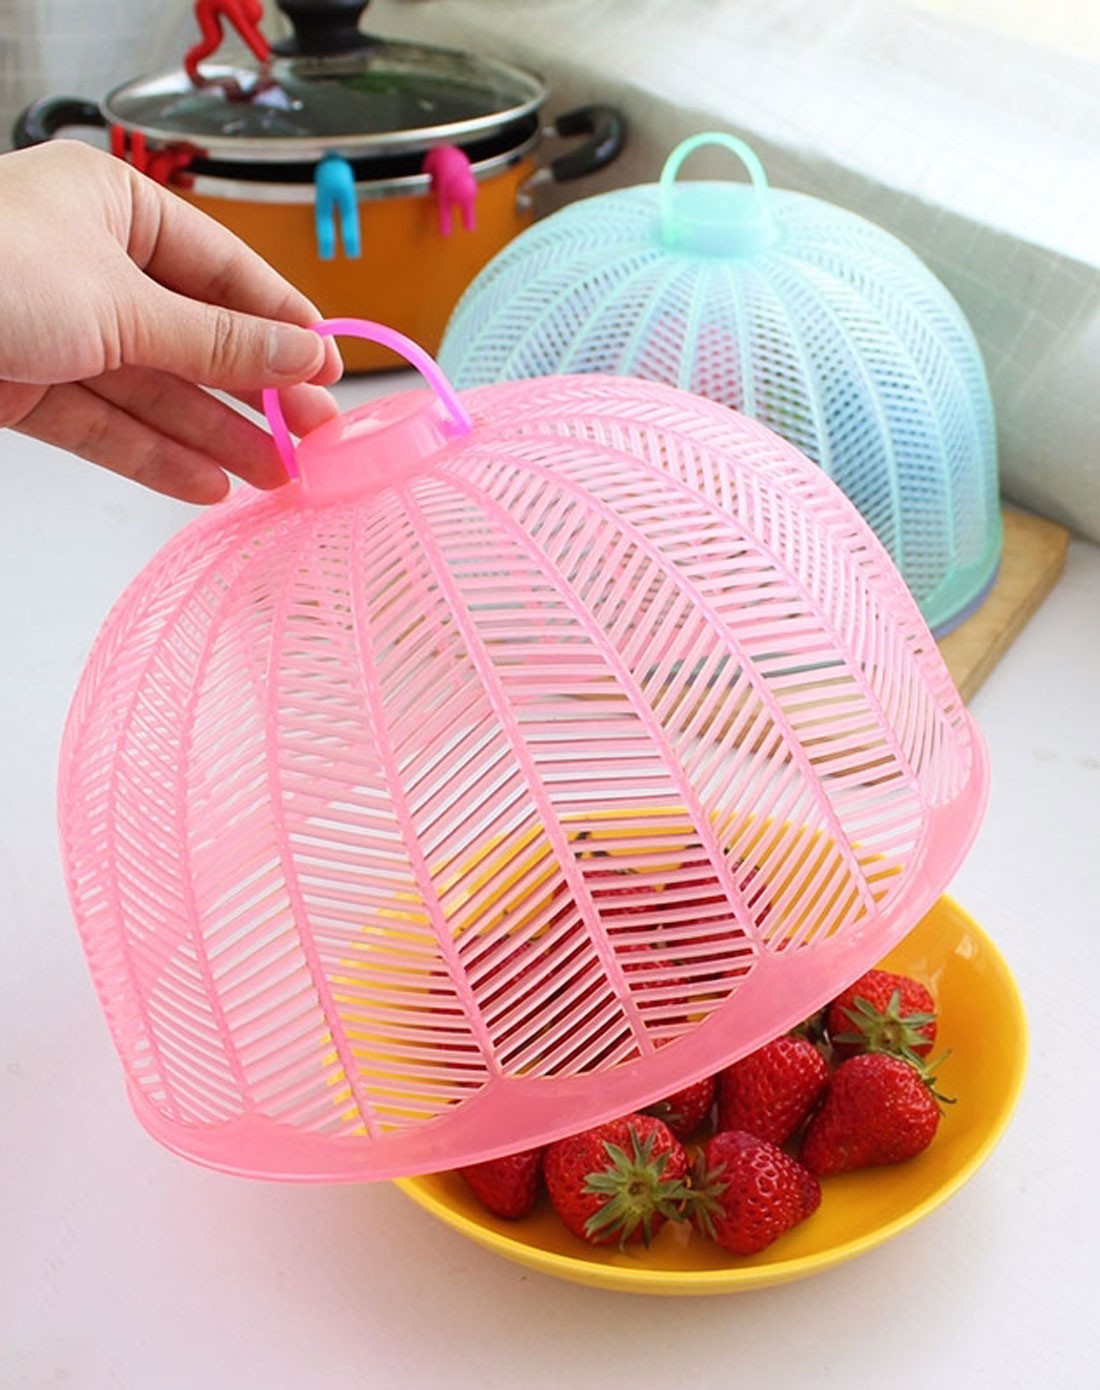 时尚环保塑料圆形食物罩(三色可选)